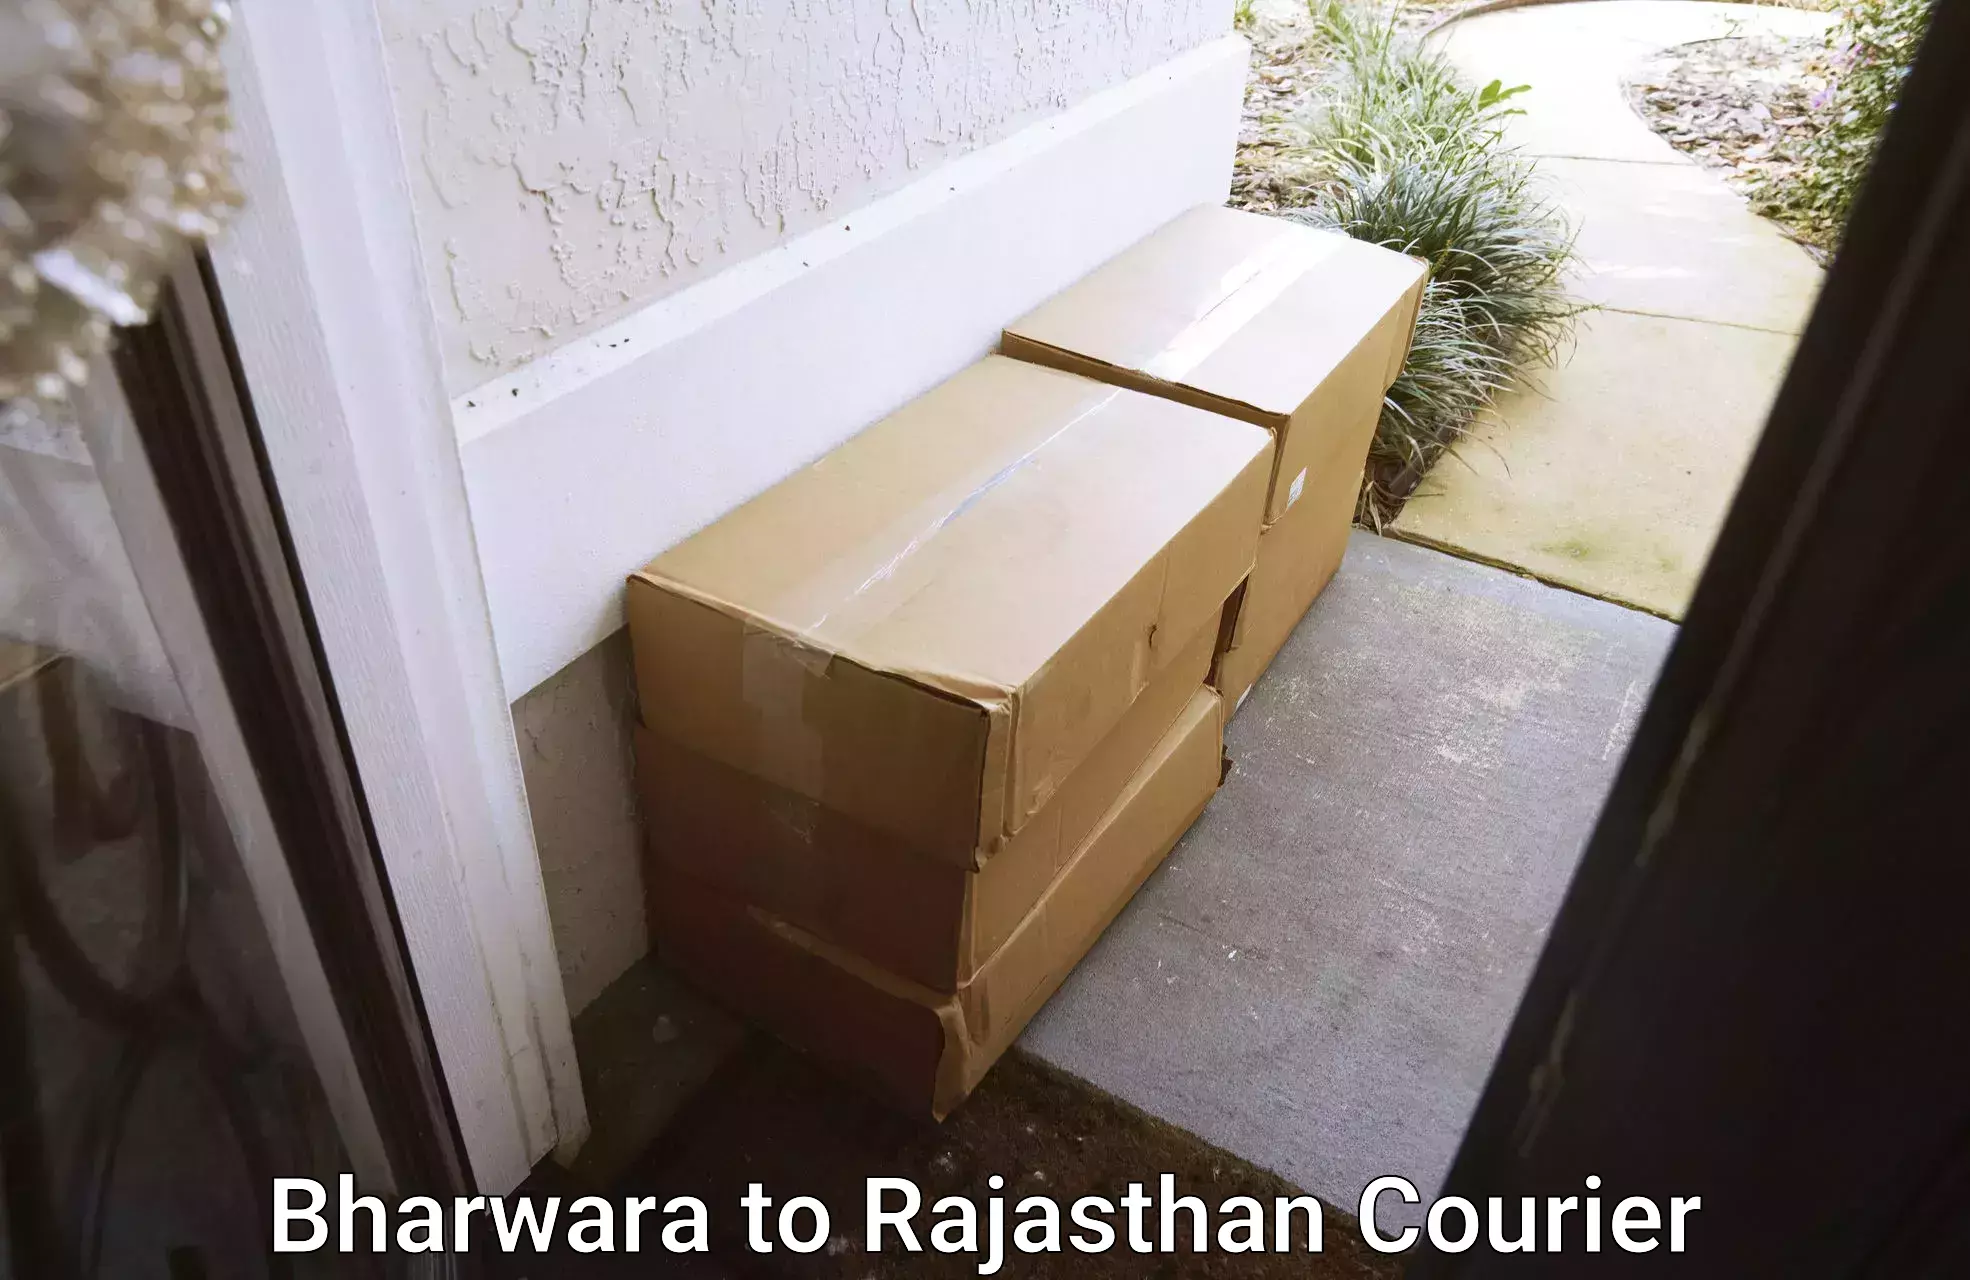 Moving and packing experts Bharwara to Khetri Nagar